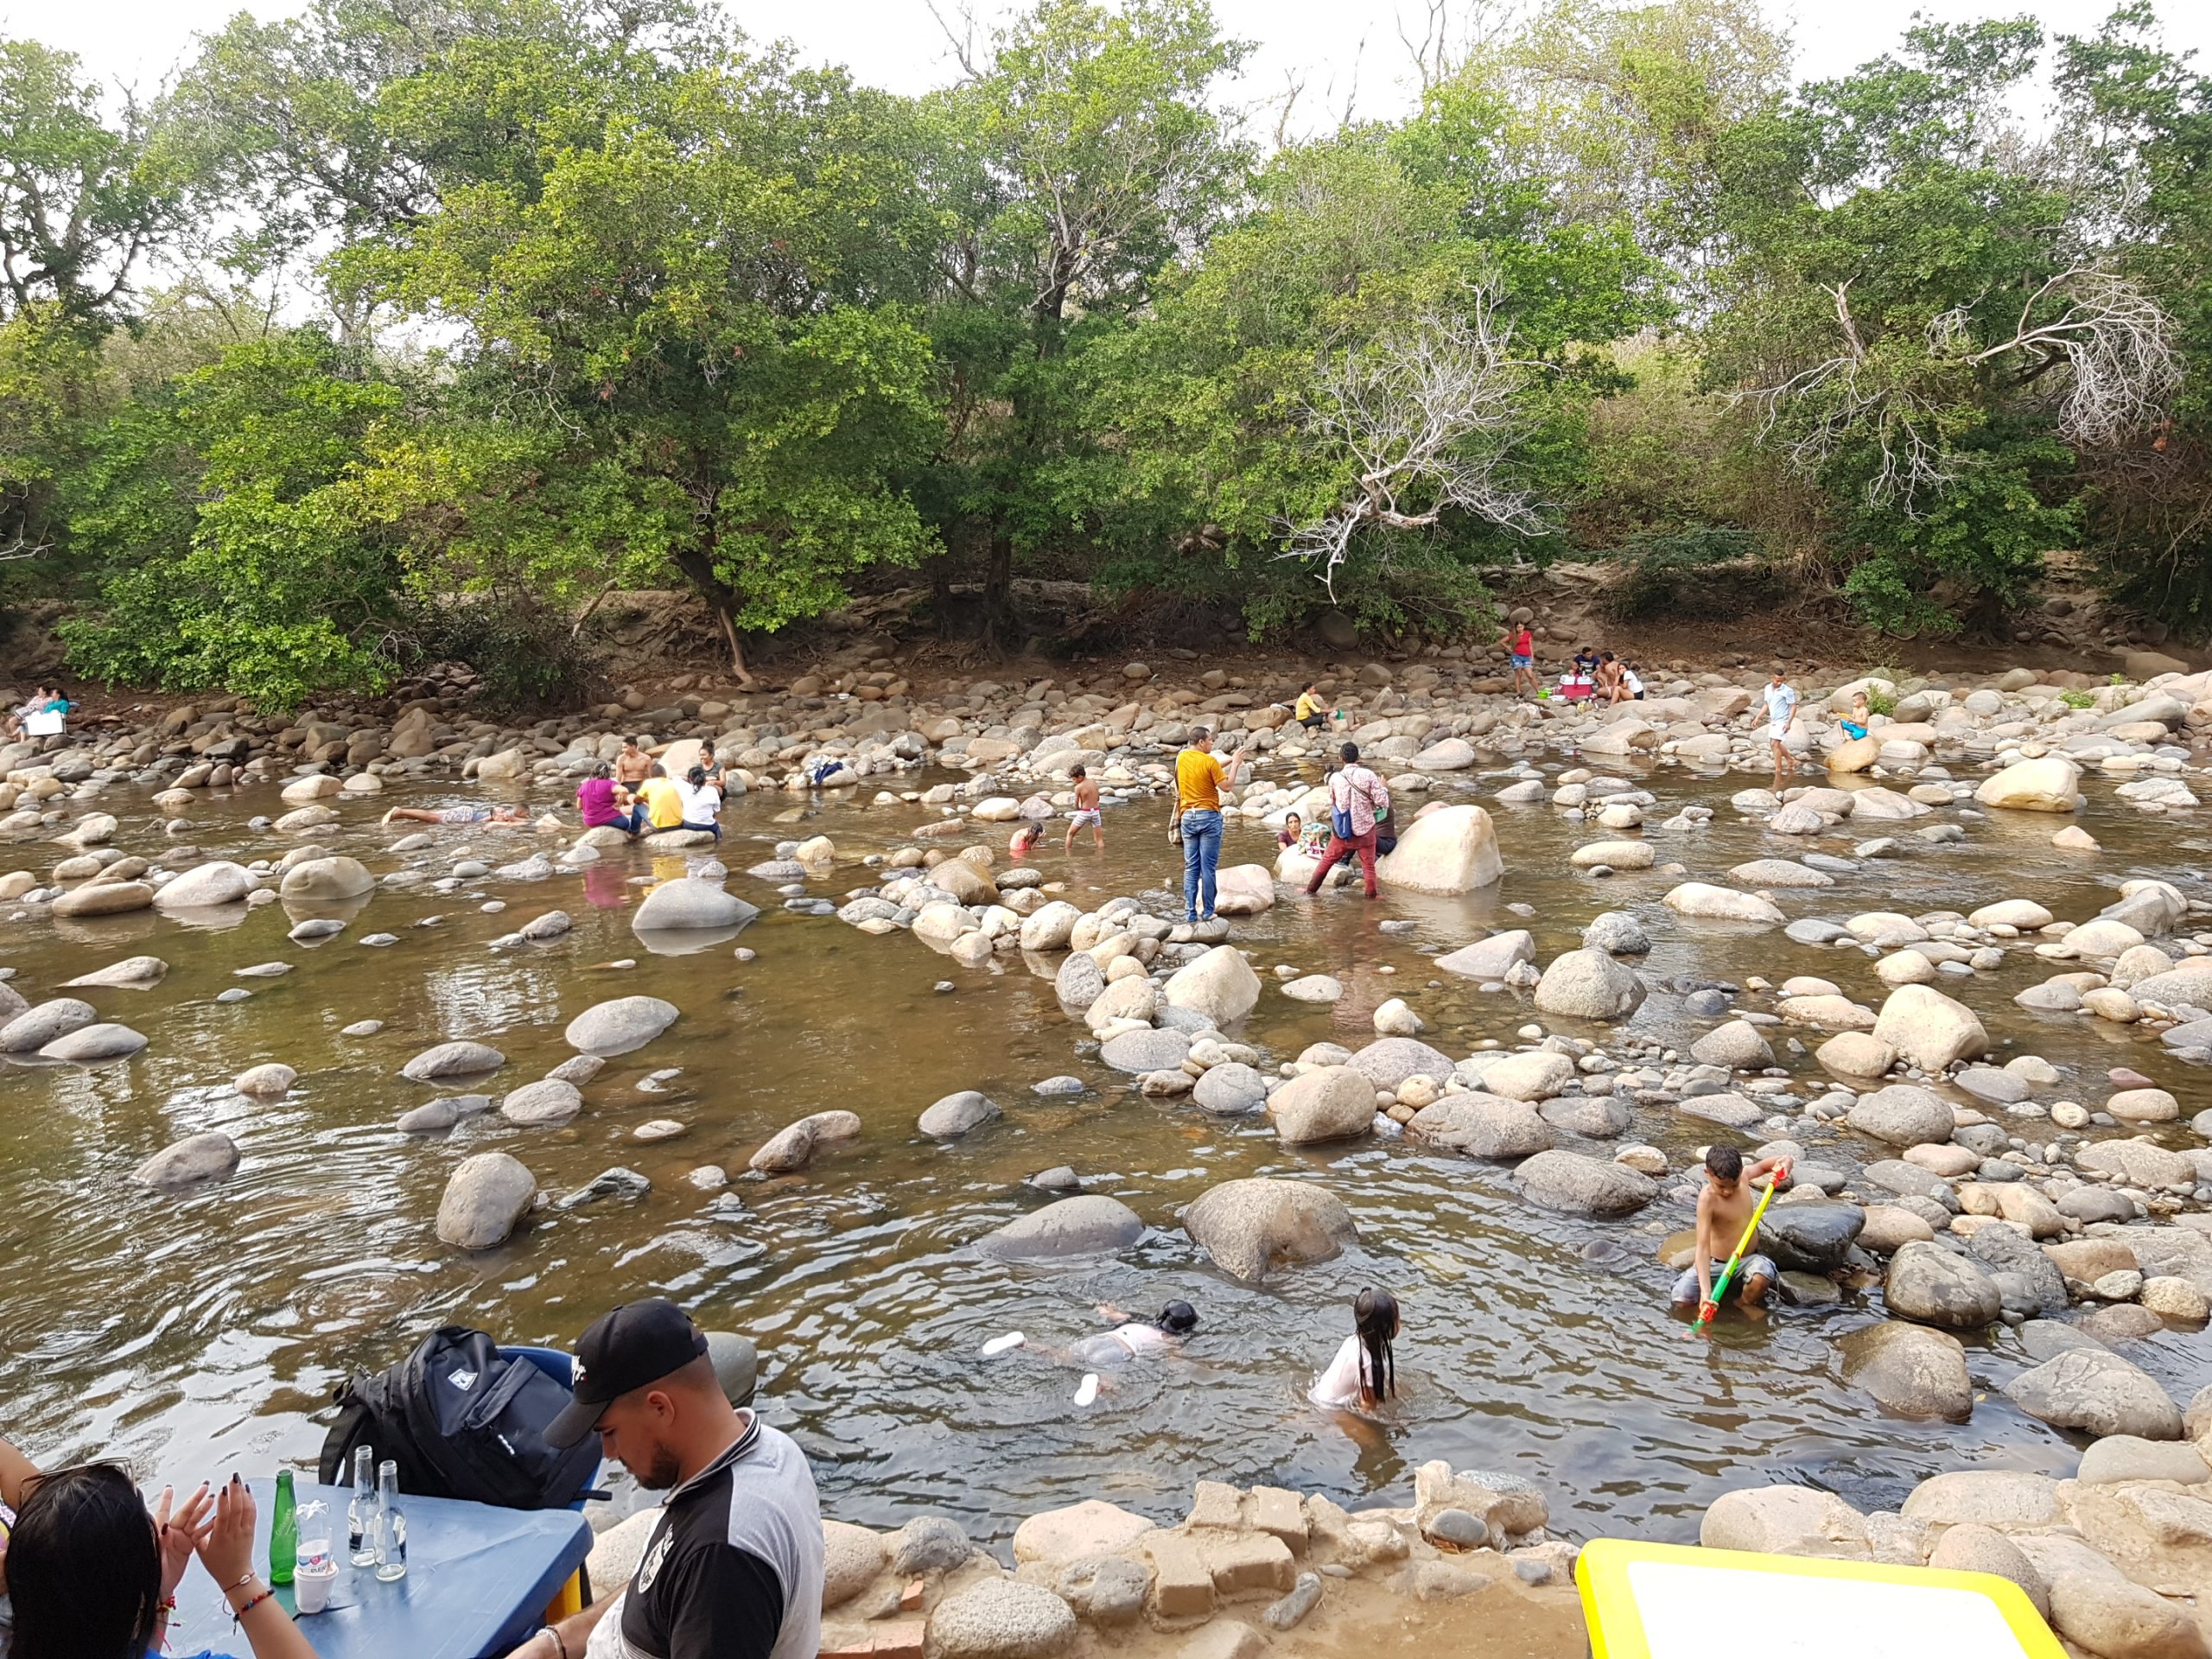 Les preocupa el Covid-19: el agua escasea en Valledupar, declaran alerta amarilla